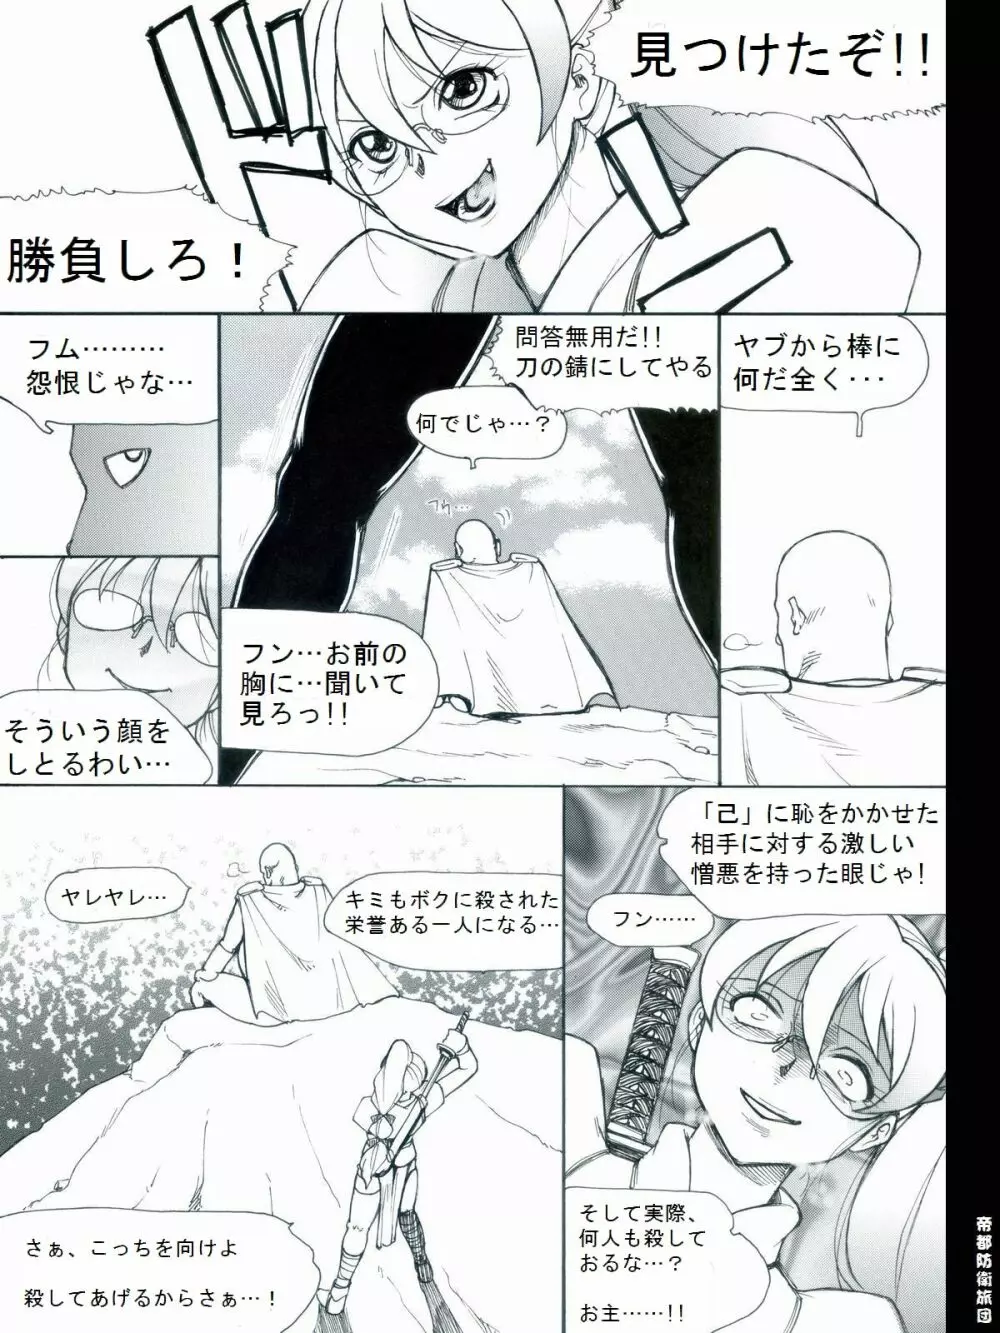 [帝都防衛旅団] RTKBOOK 9-3 「M○Xいぢり(3) 『PANPAN-MAN』」 4ページ